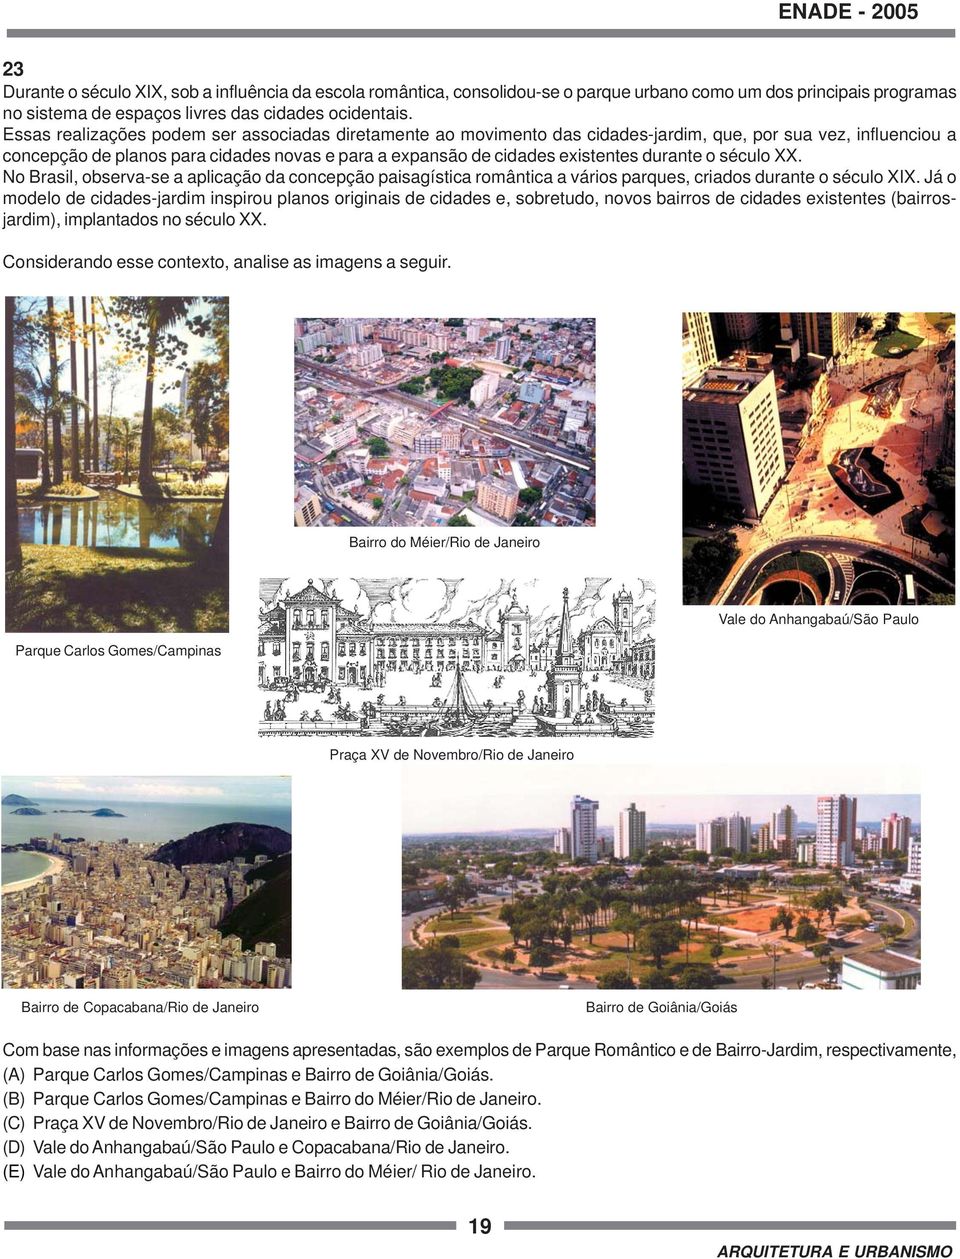 durante o século XX. No Brasil, observa-se a aplicação da concepção paisagística romântica a vários parques, criados durante o século XIX.